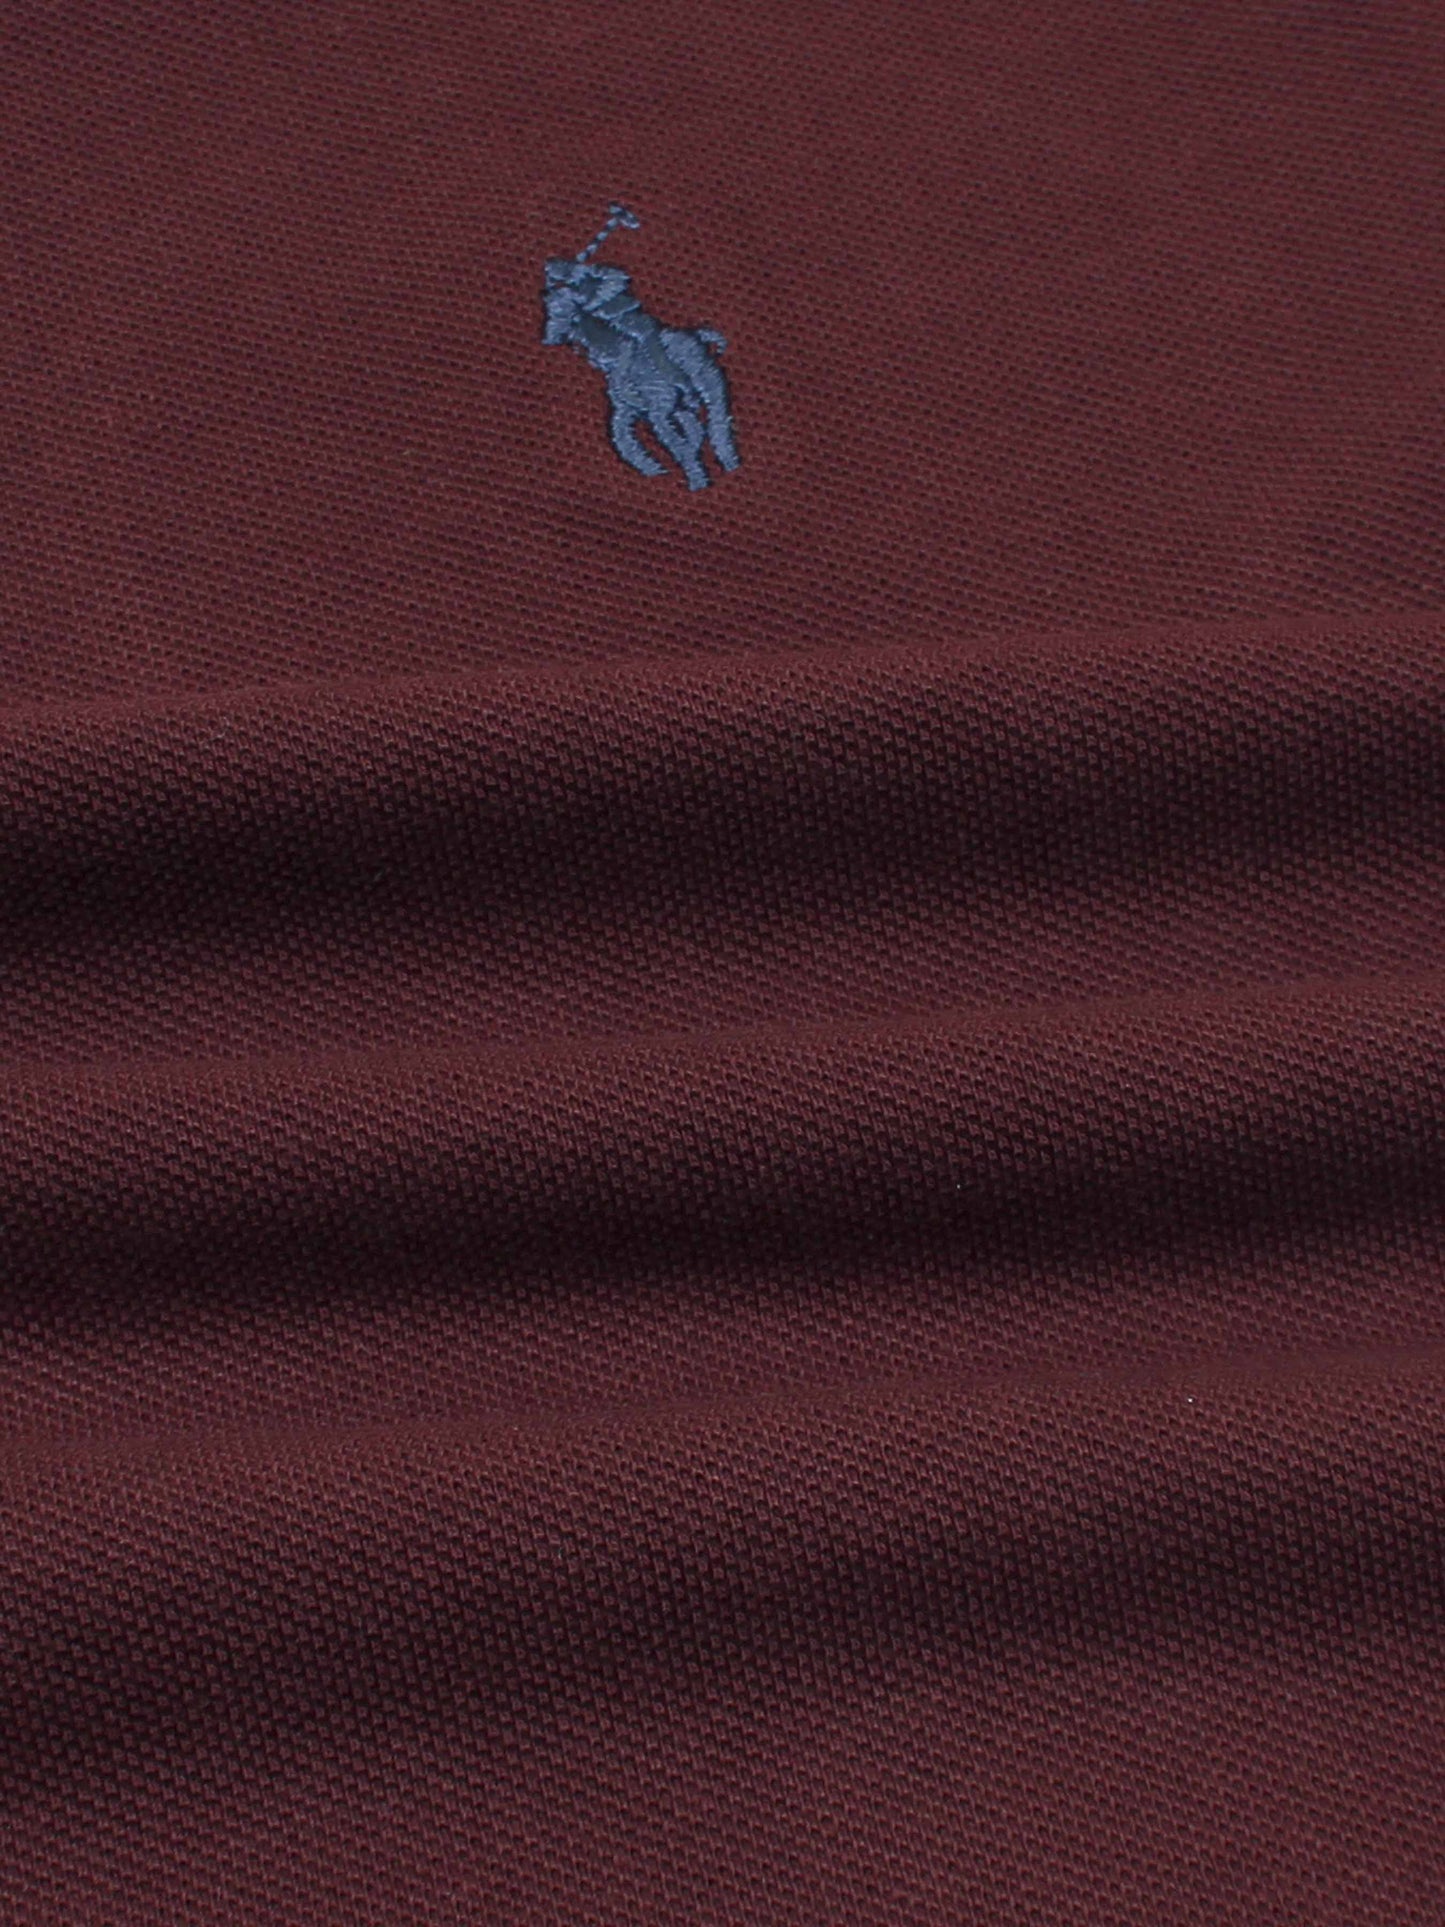 RL Premium Placket Polo Shirt (Maroon)